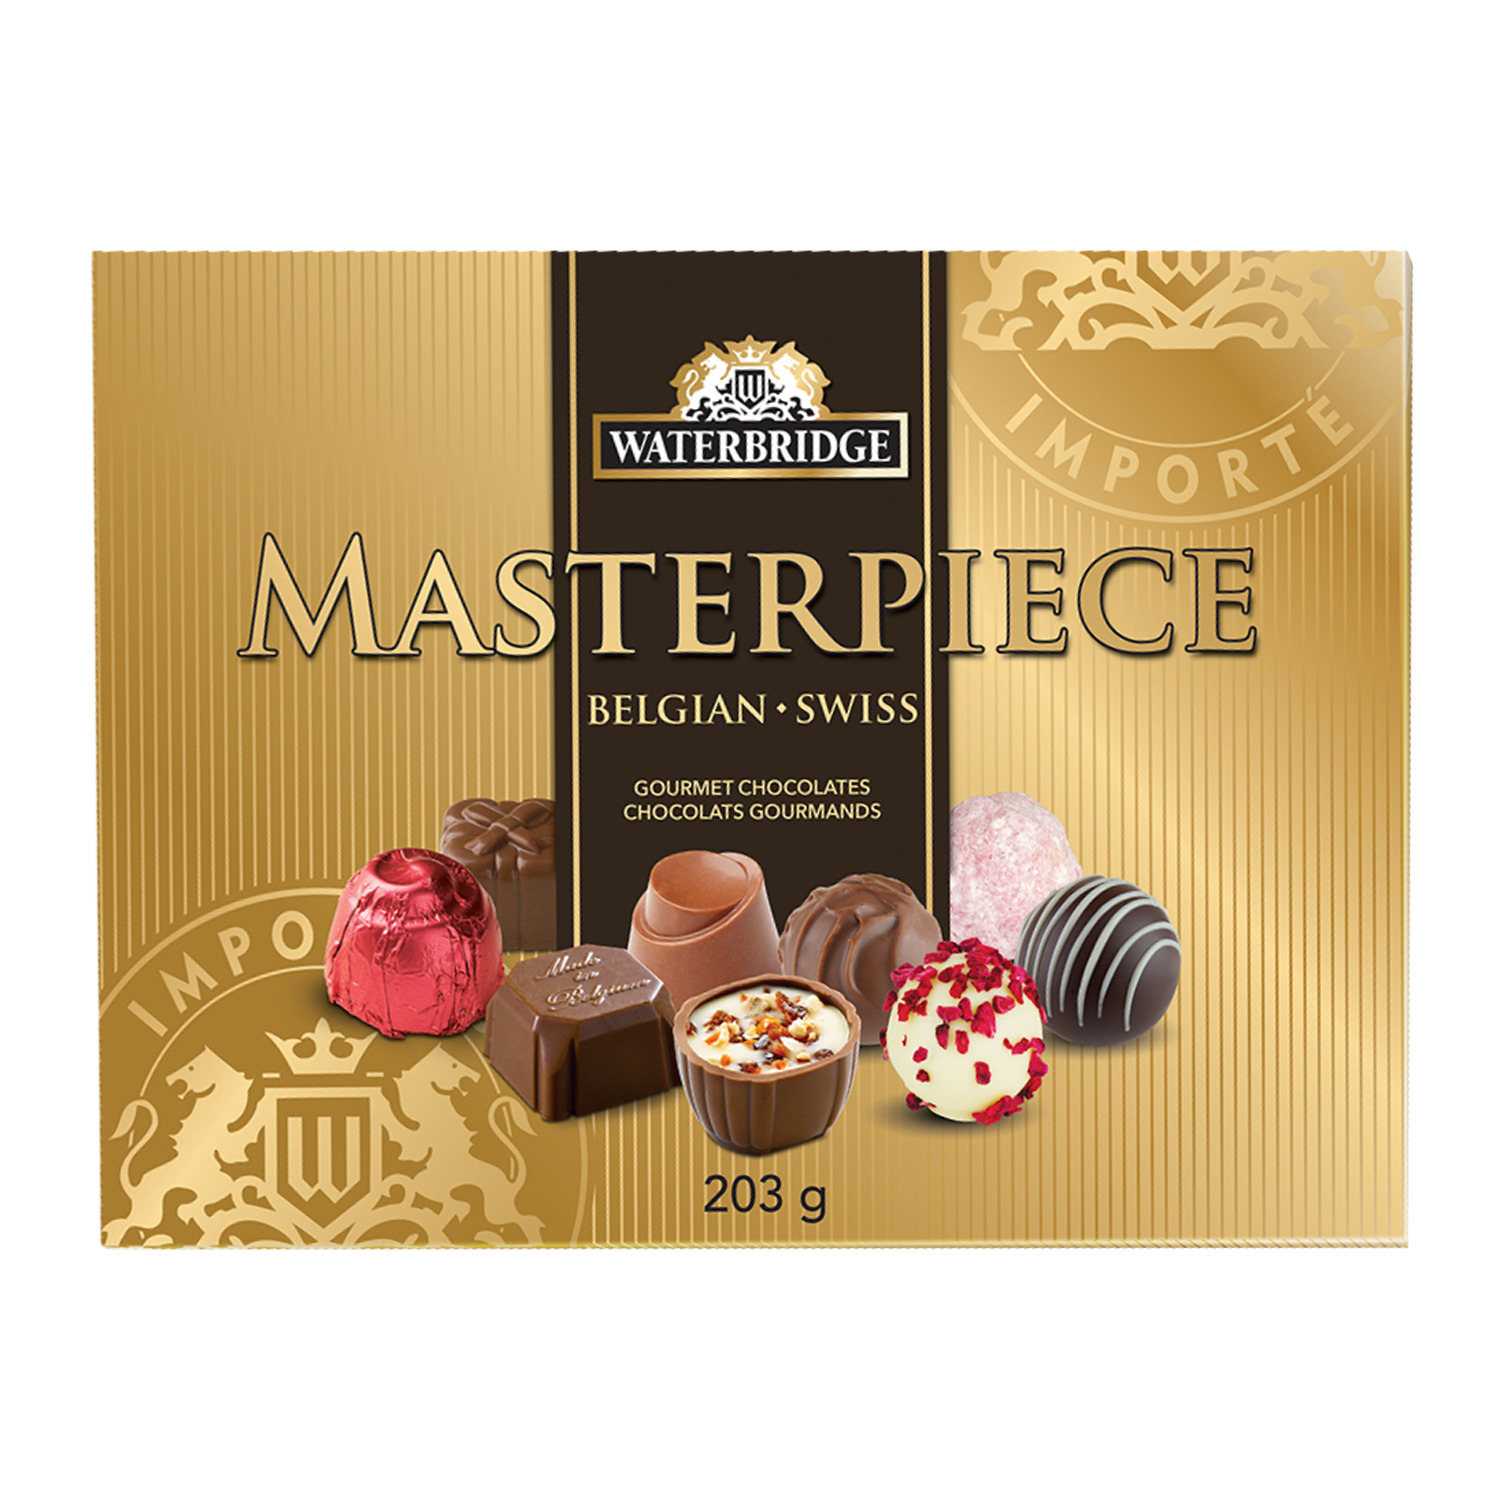 Waterbridge - Masterpiece - Assortiment de chocolats gourmands belges suisses, 203g